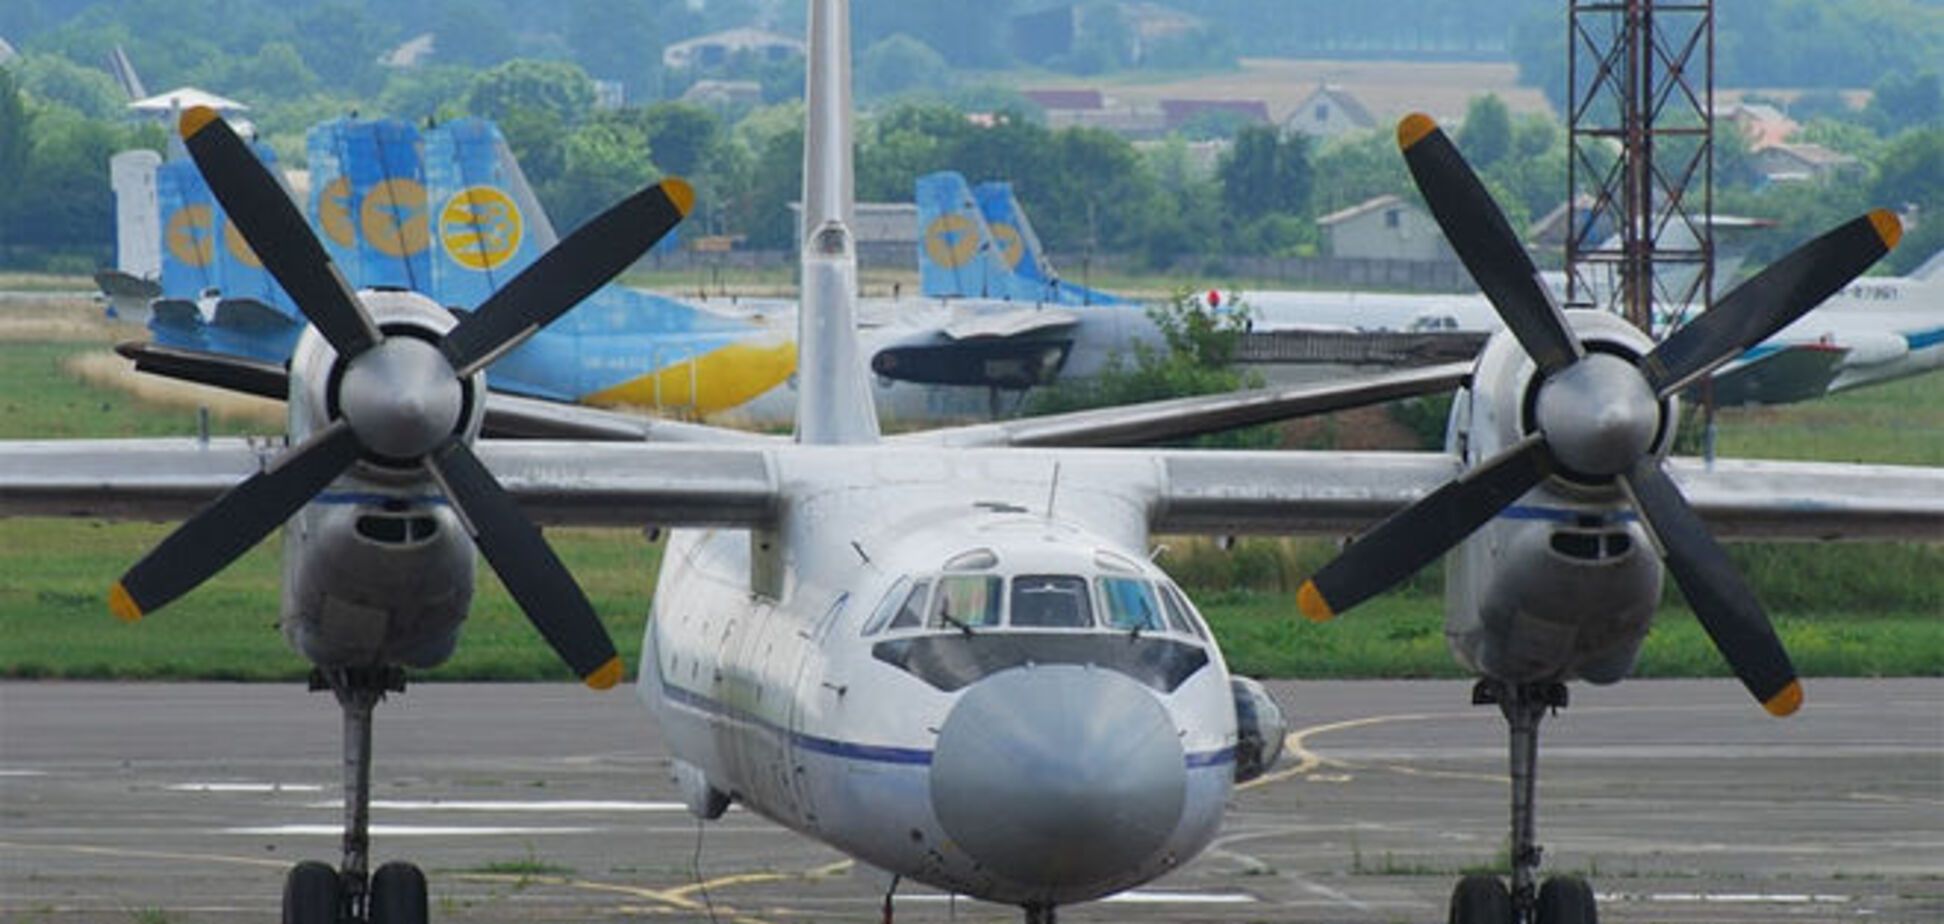 Після ремонту в Україні зникли п'ять індійських літаків - ЗМІ